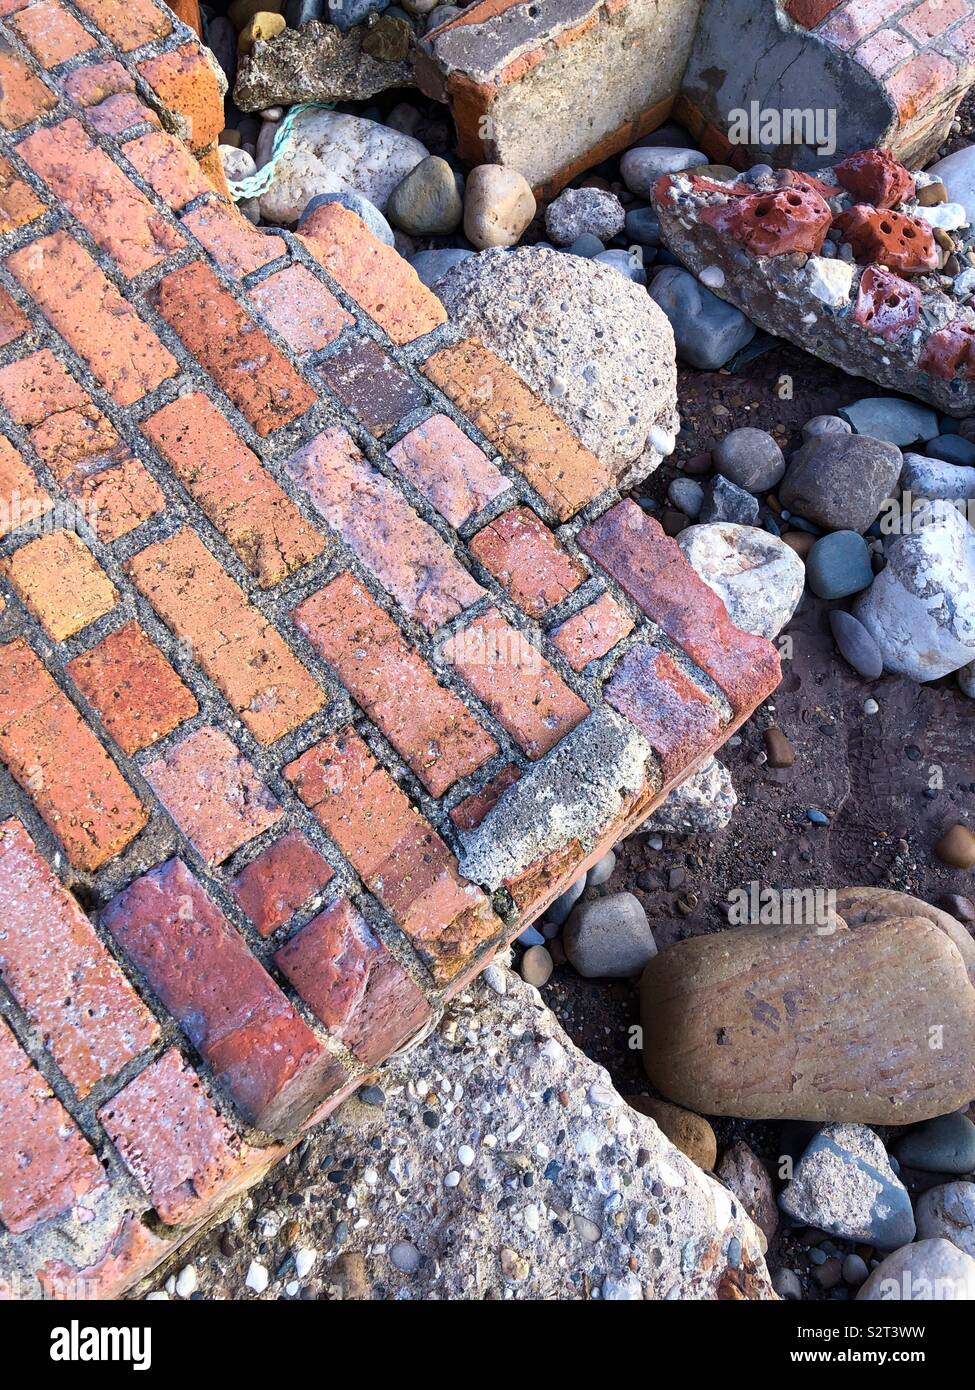 Résumé formé par les briques, de roches et de béton échoué sur une plage Banque D'Images